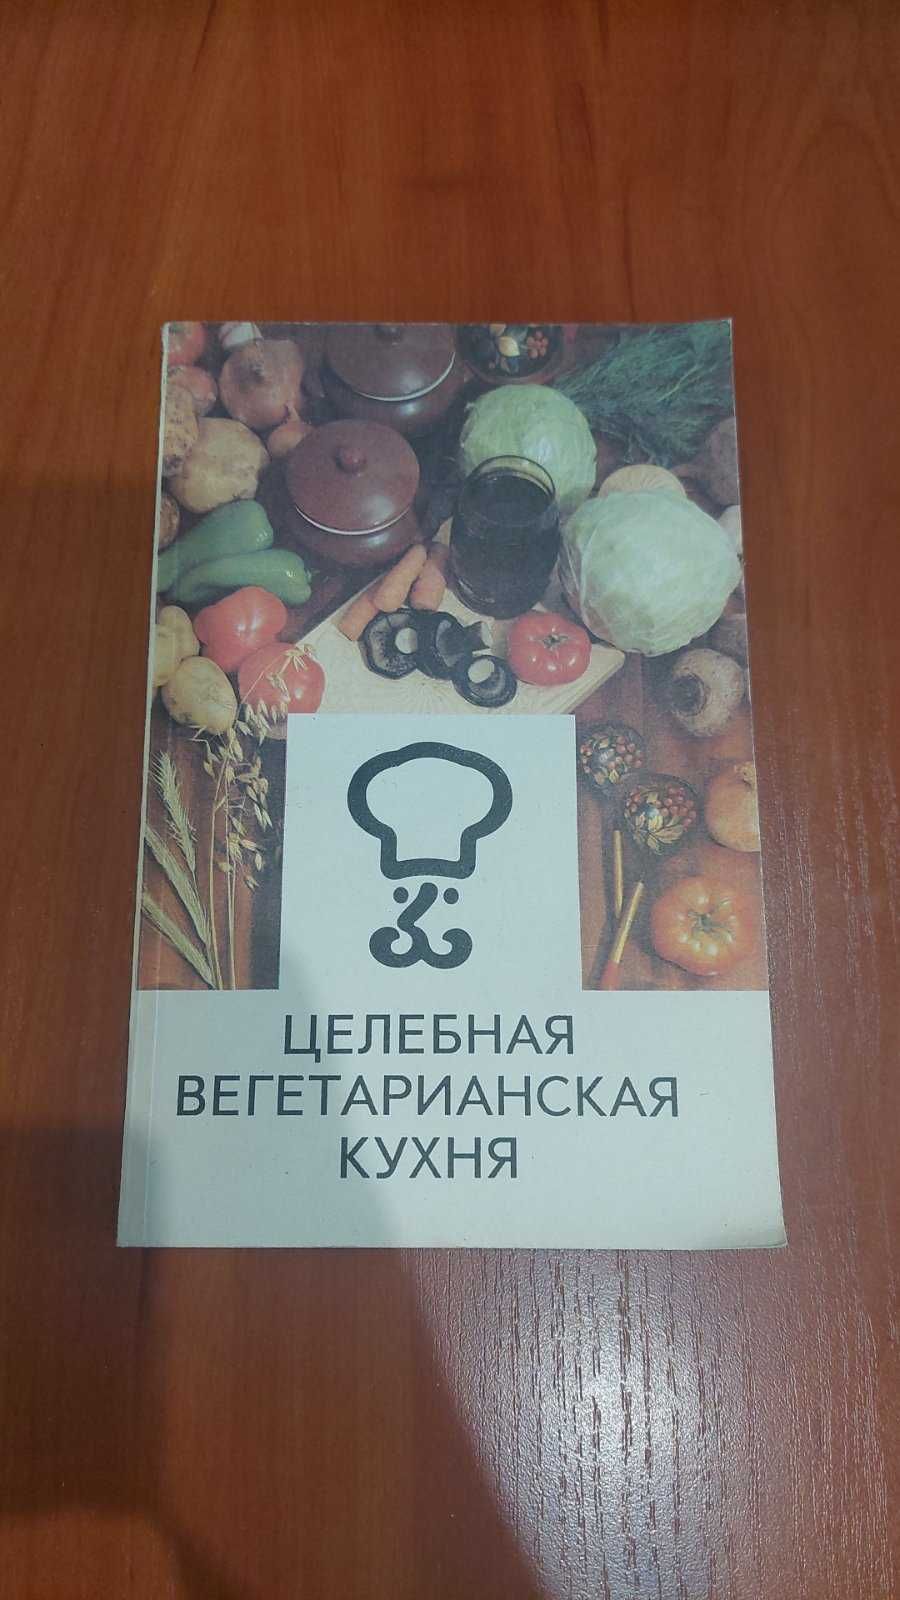 Г.И. Молчанова "Целебная вегетарианская кухня"